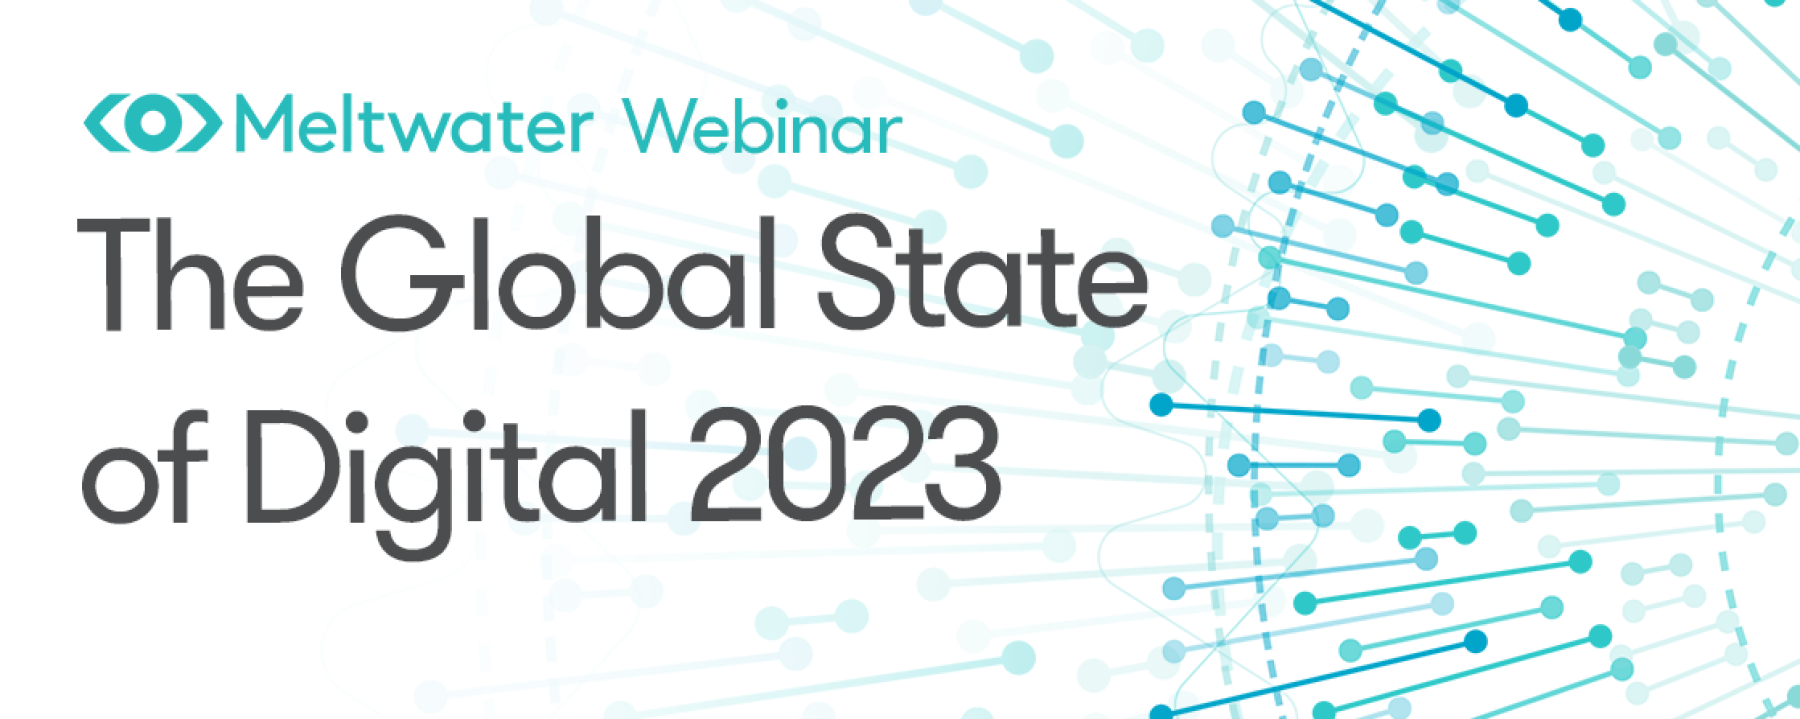 The Global State of Digital 2023 - EMEA